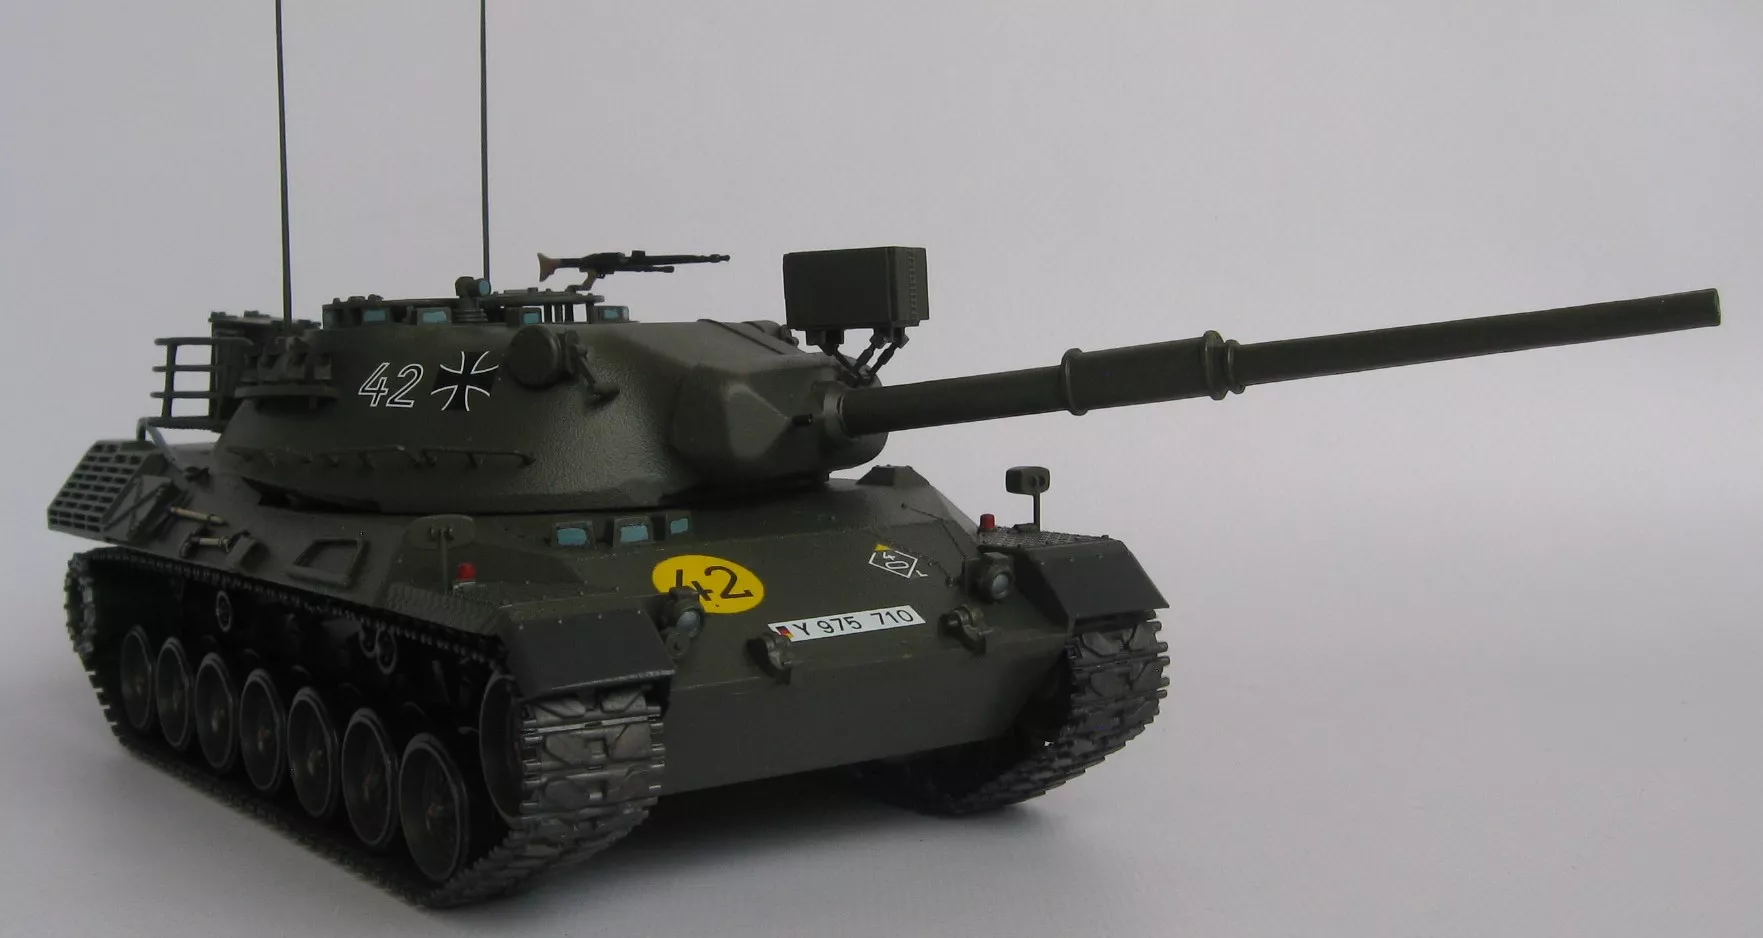 Западно-германский танк Leopard c 105мм. пушкой и 1фигурой